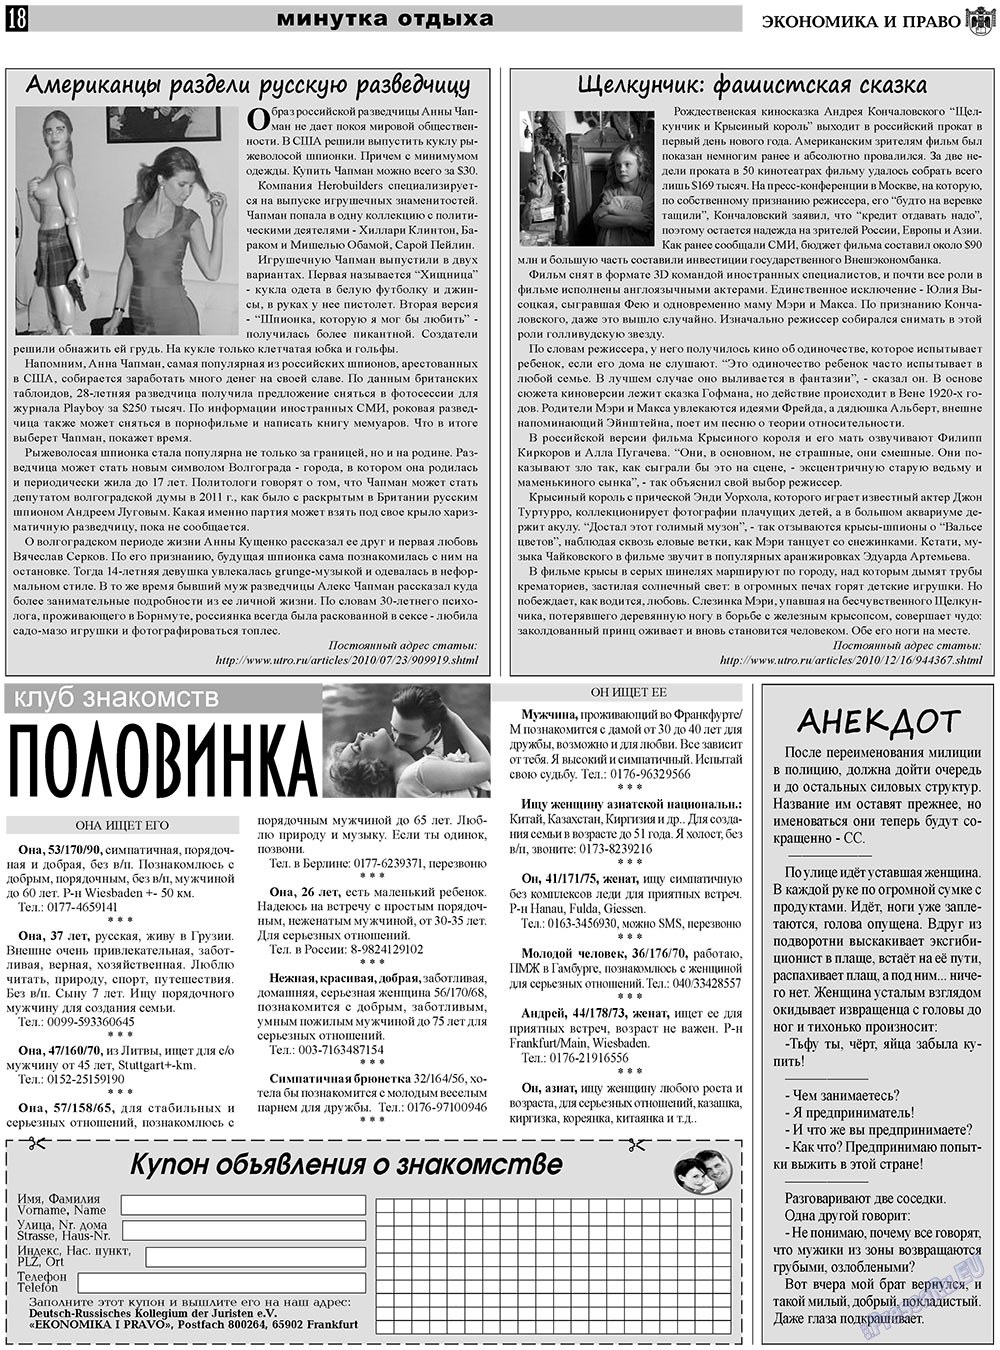 Экономика и право, газета. 2011 №1 стр.18